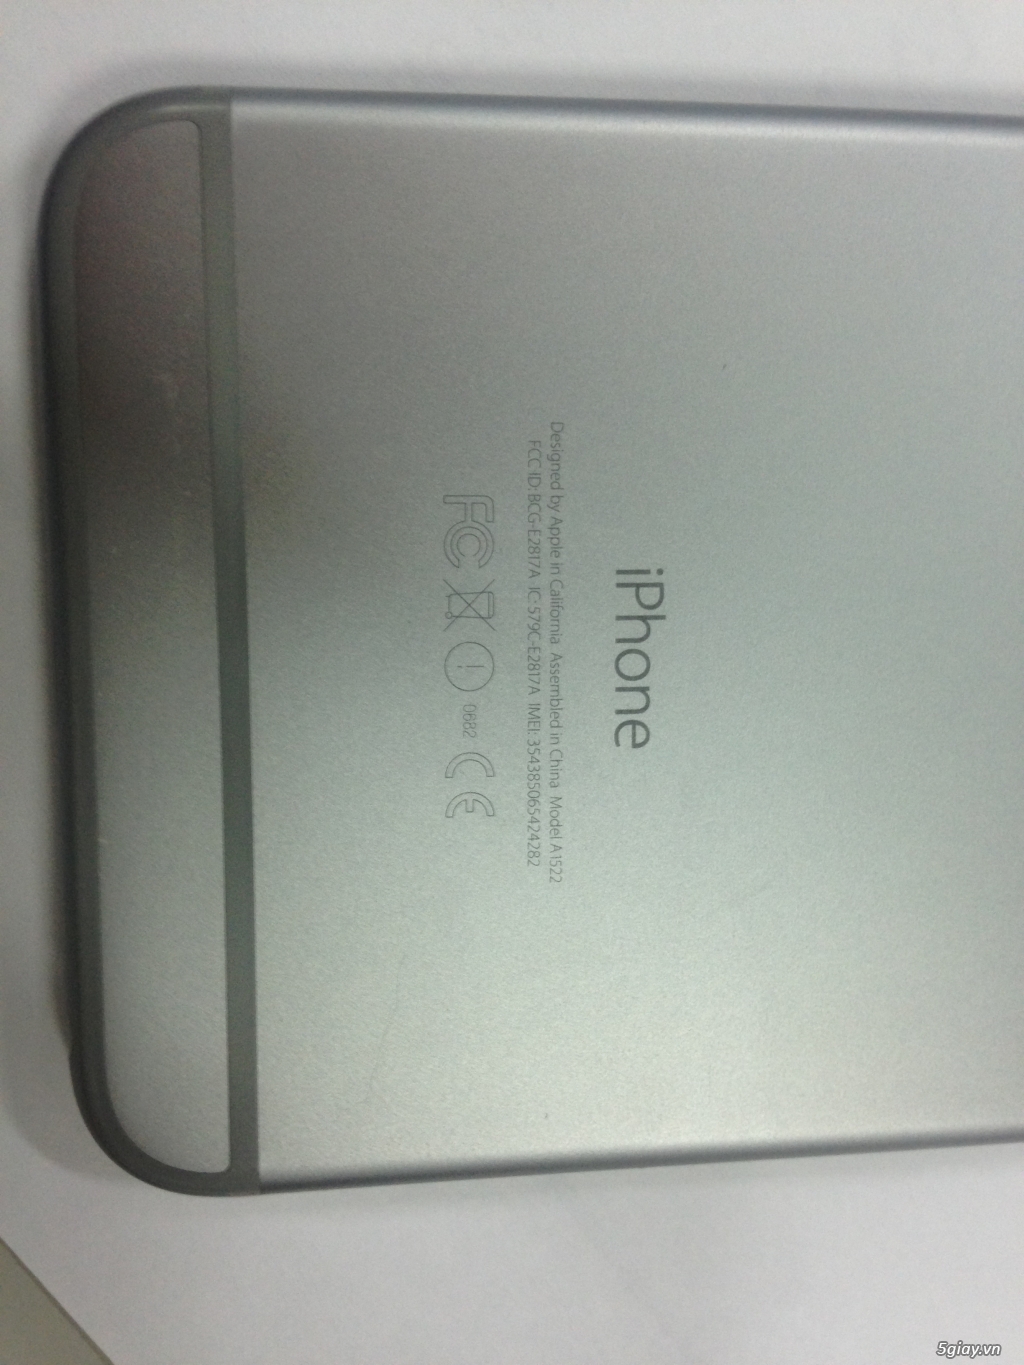 Bán Iphone 6 Plus 16 GB Gray hàng nguyên zin, bao xài xả ga giá 9.900k - 4